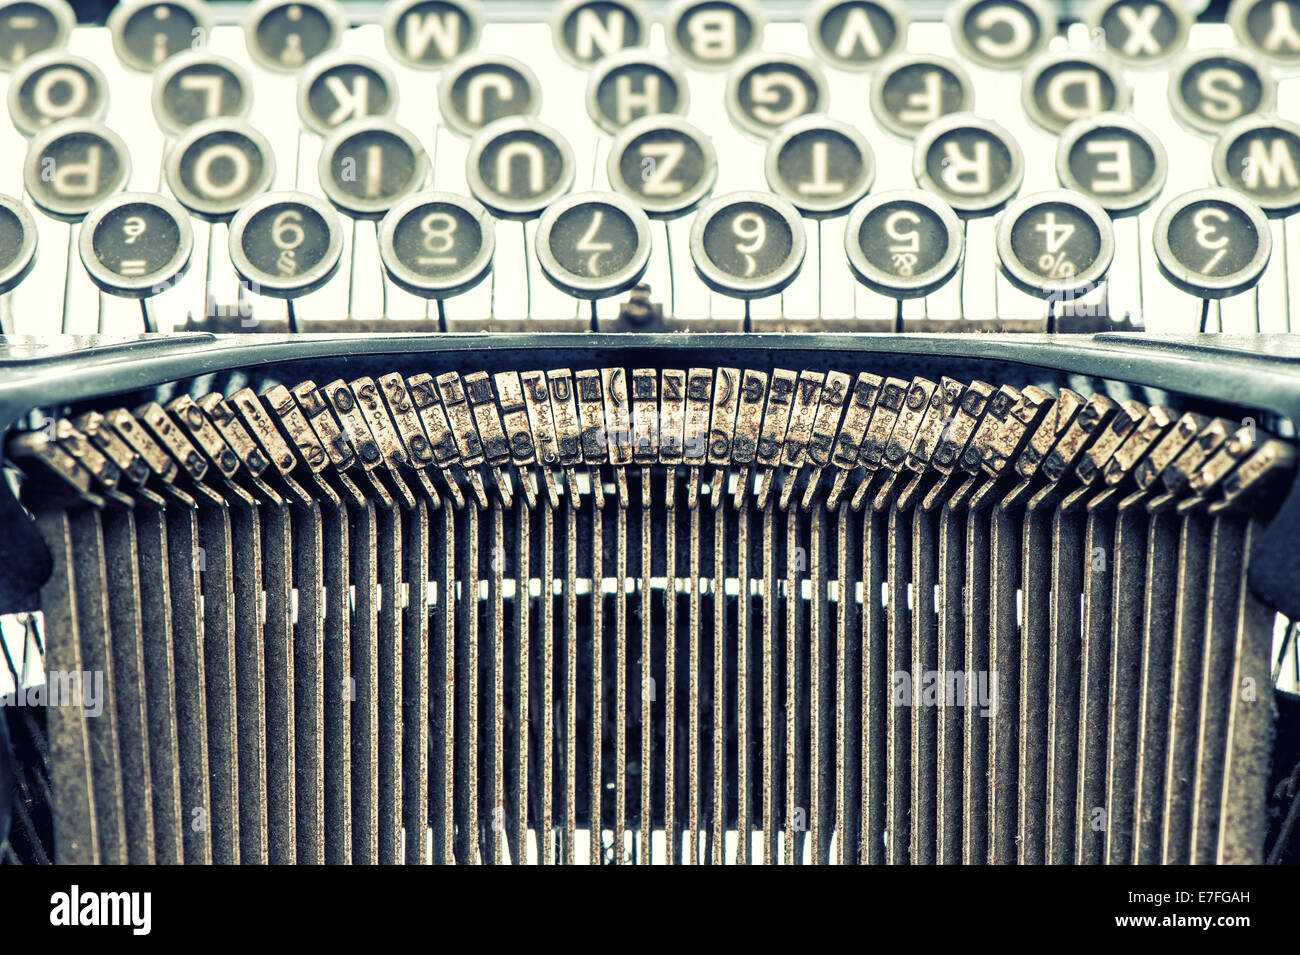 Antike Schreibmaschine. Vintage-Objekt. Retro-Stil getönten Bild Stockfoto